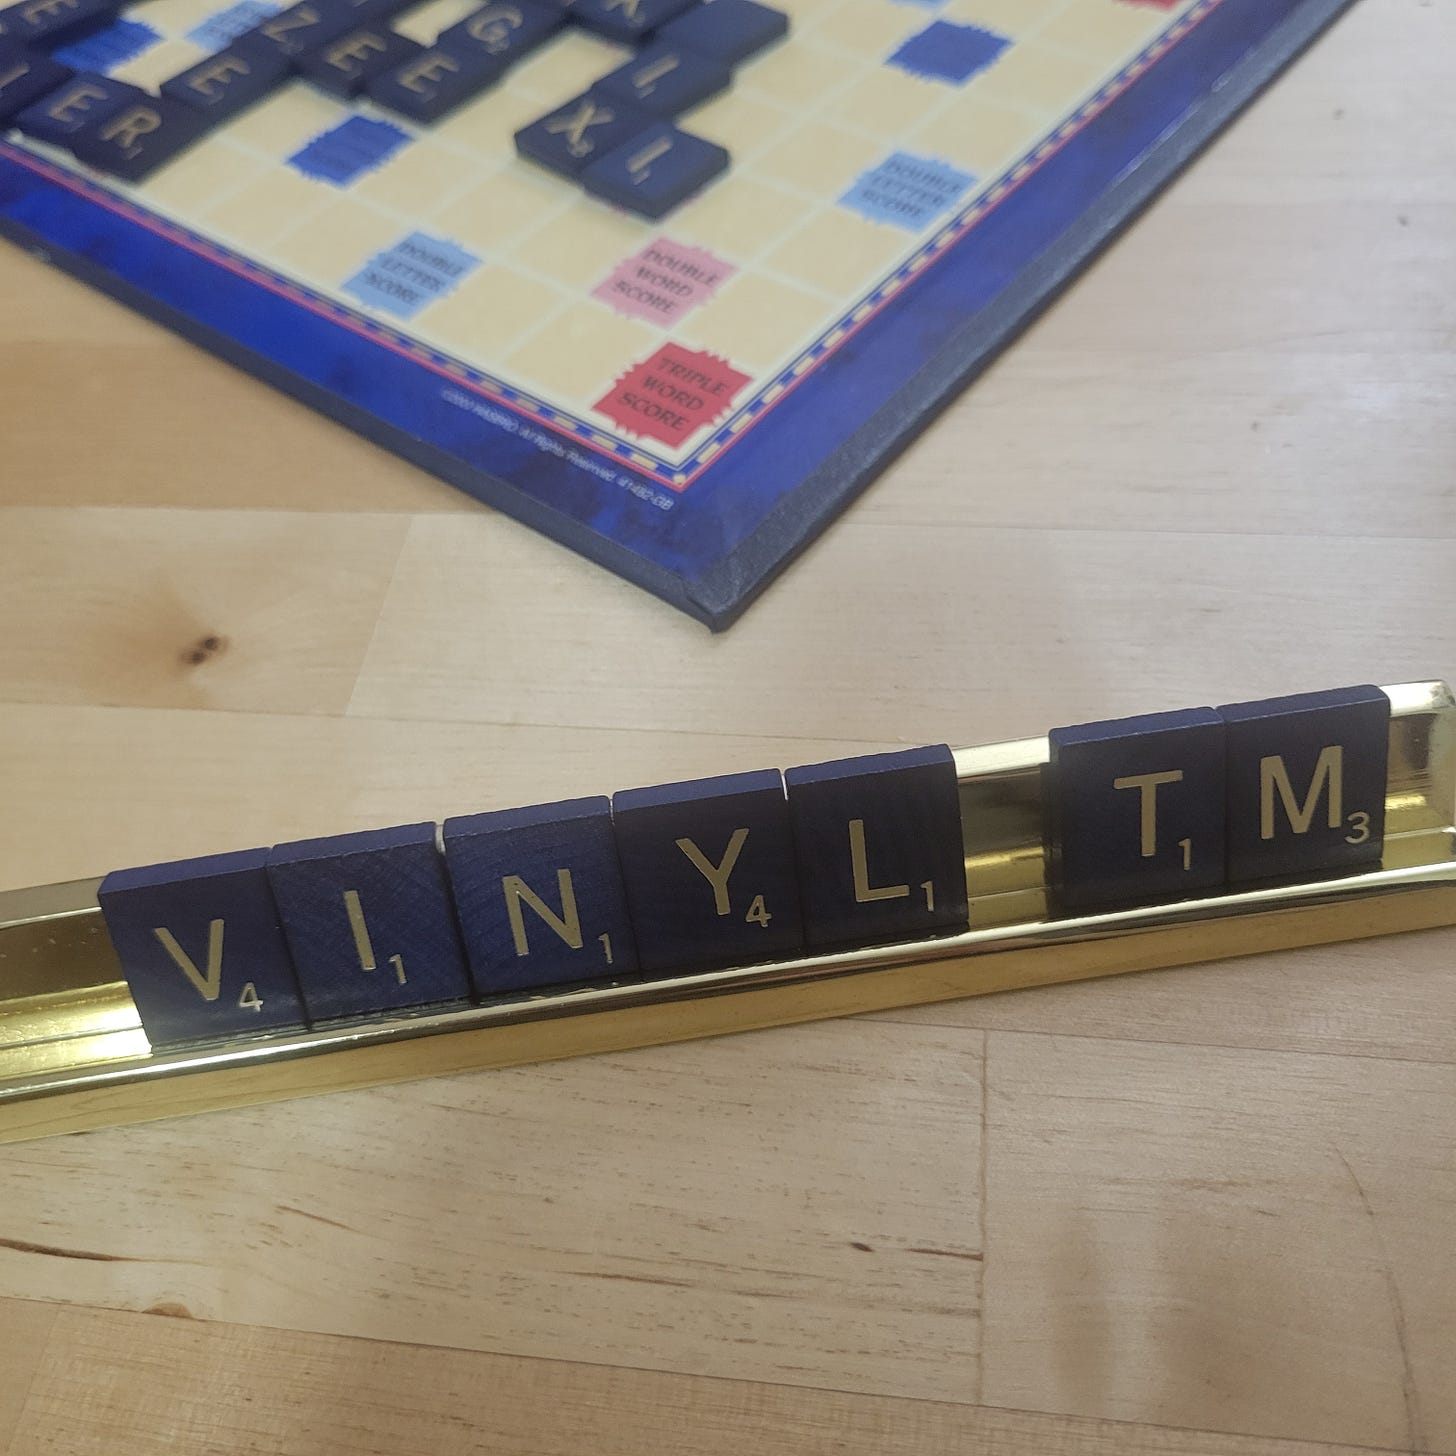 Scrabble board game. Gold rack has letters: "V I N Y L // TM